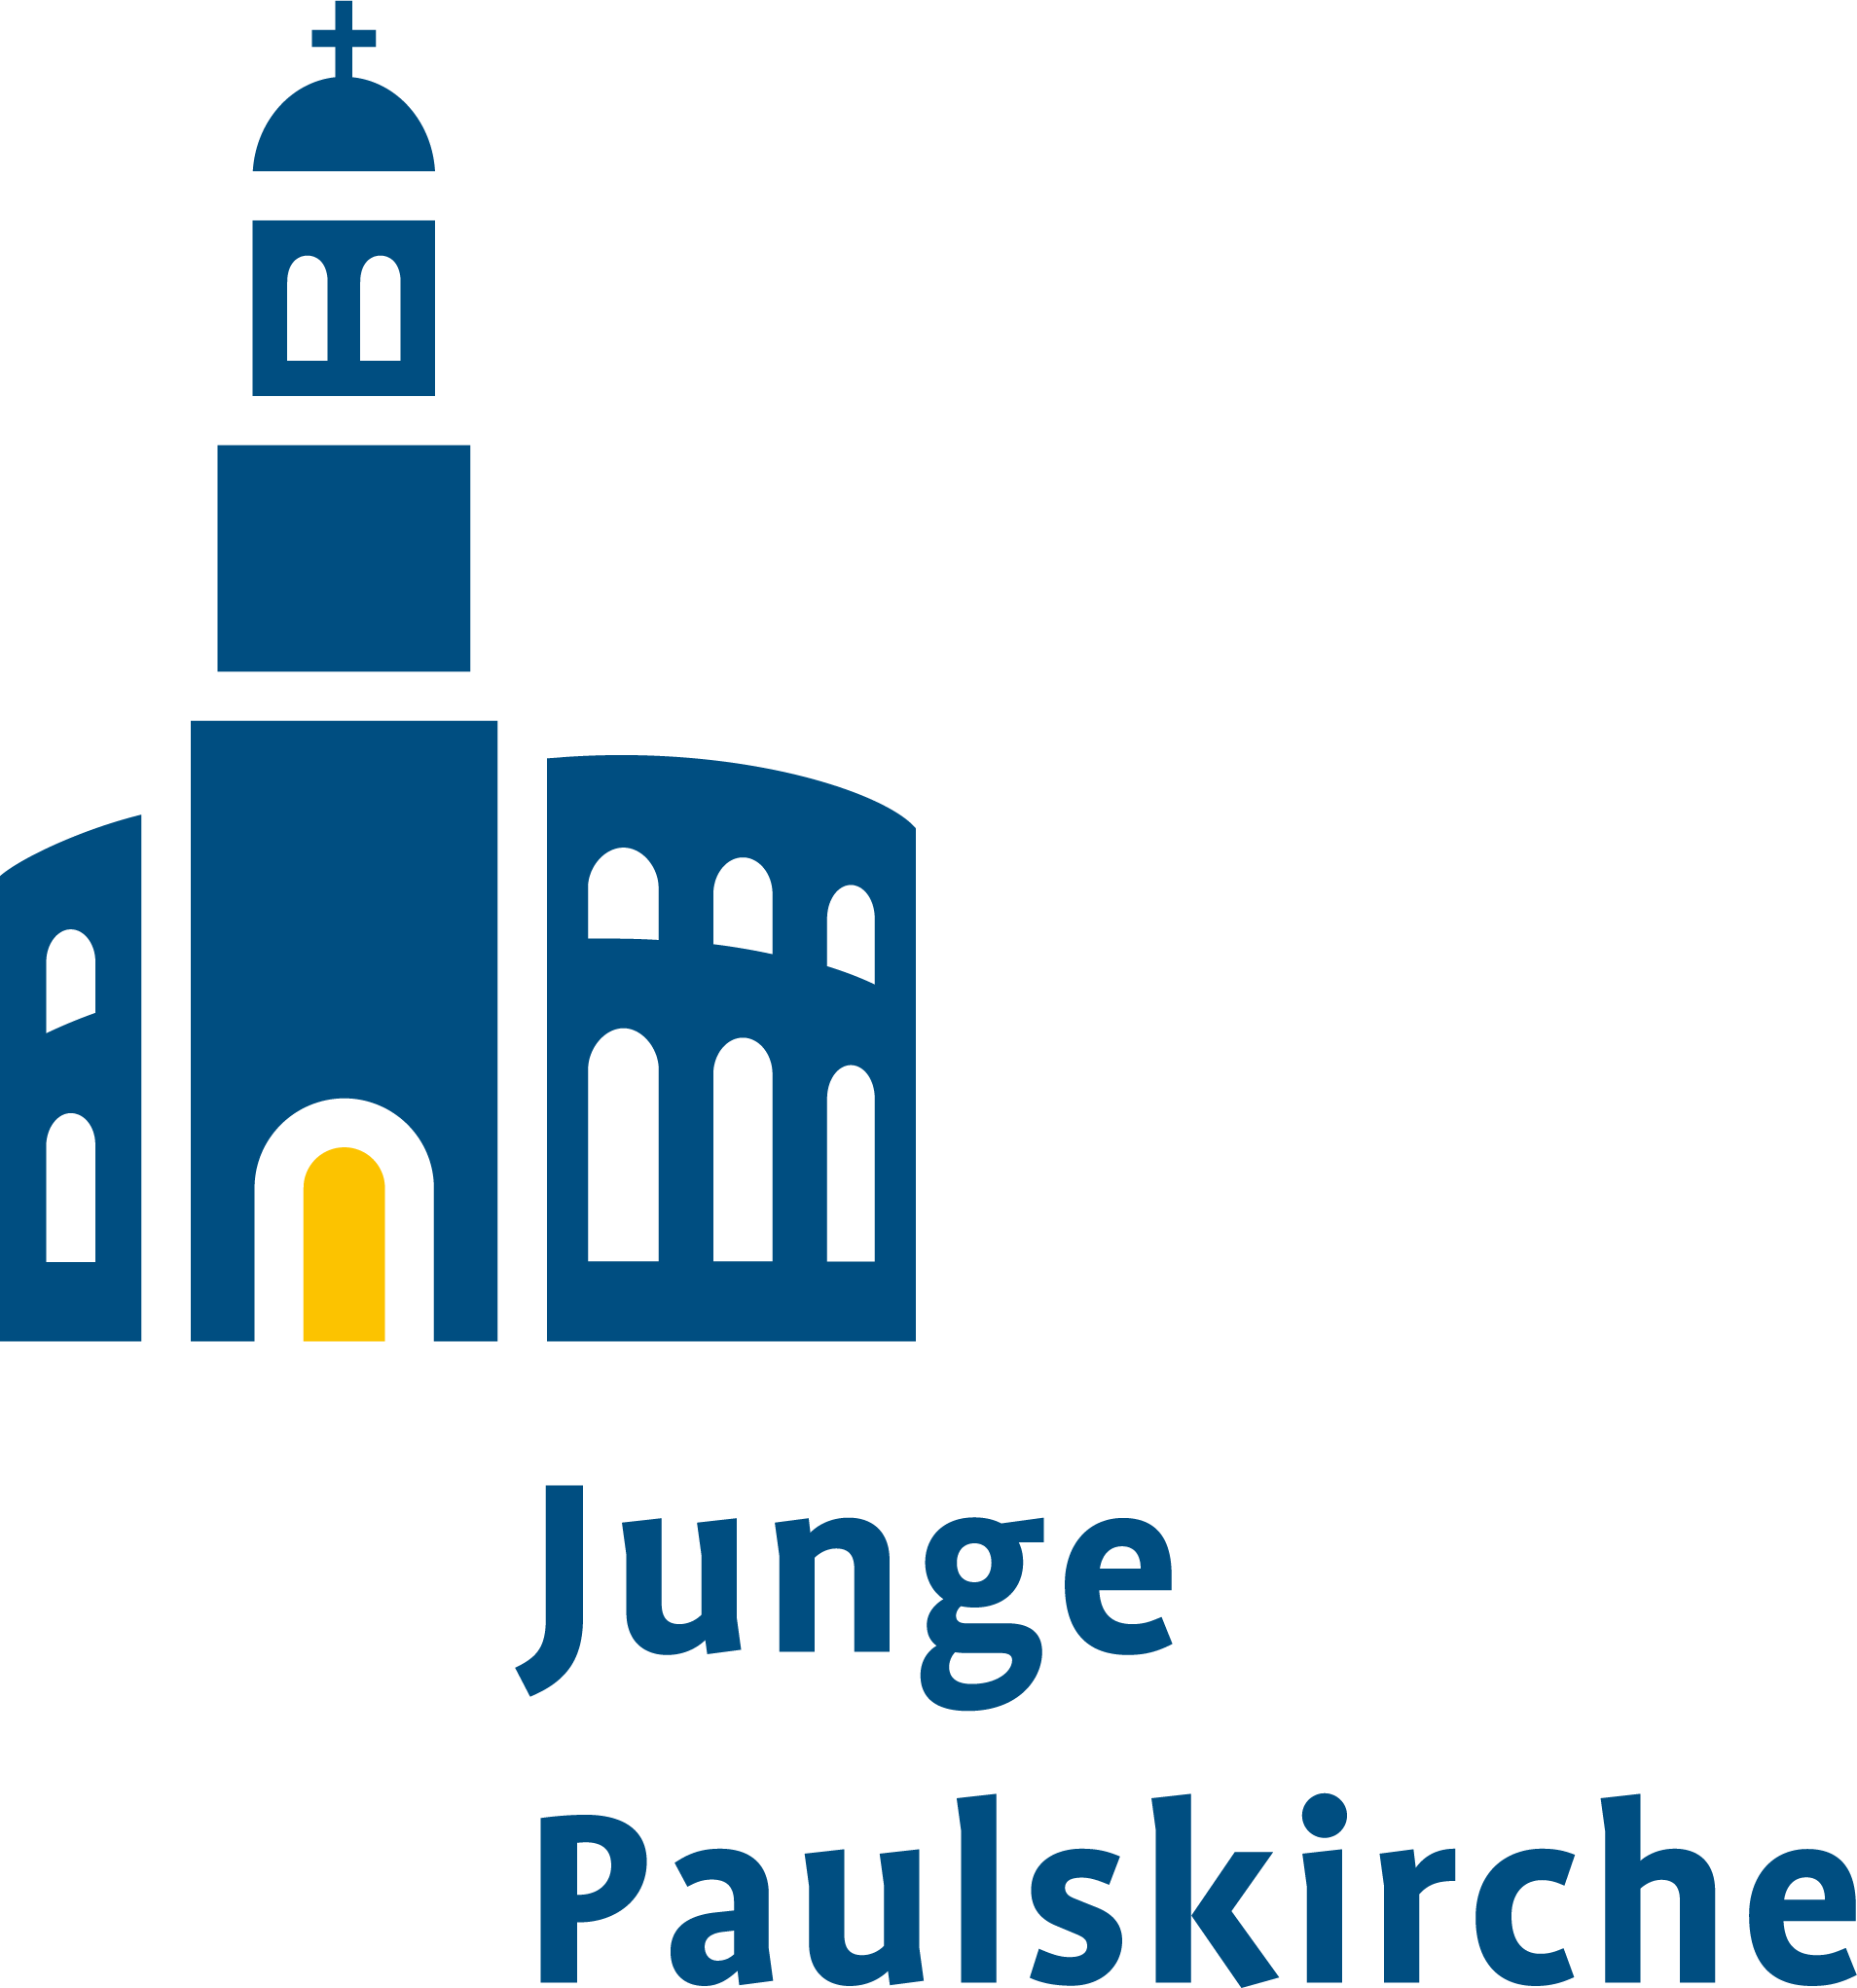 Das Logo zeigt eine abstrahierte Version der Paulskirche in blau mit einer gelben Pforte.